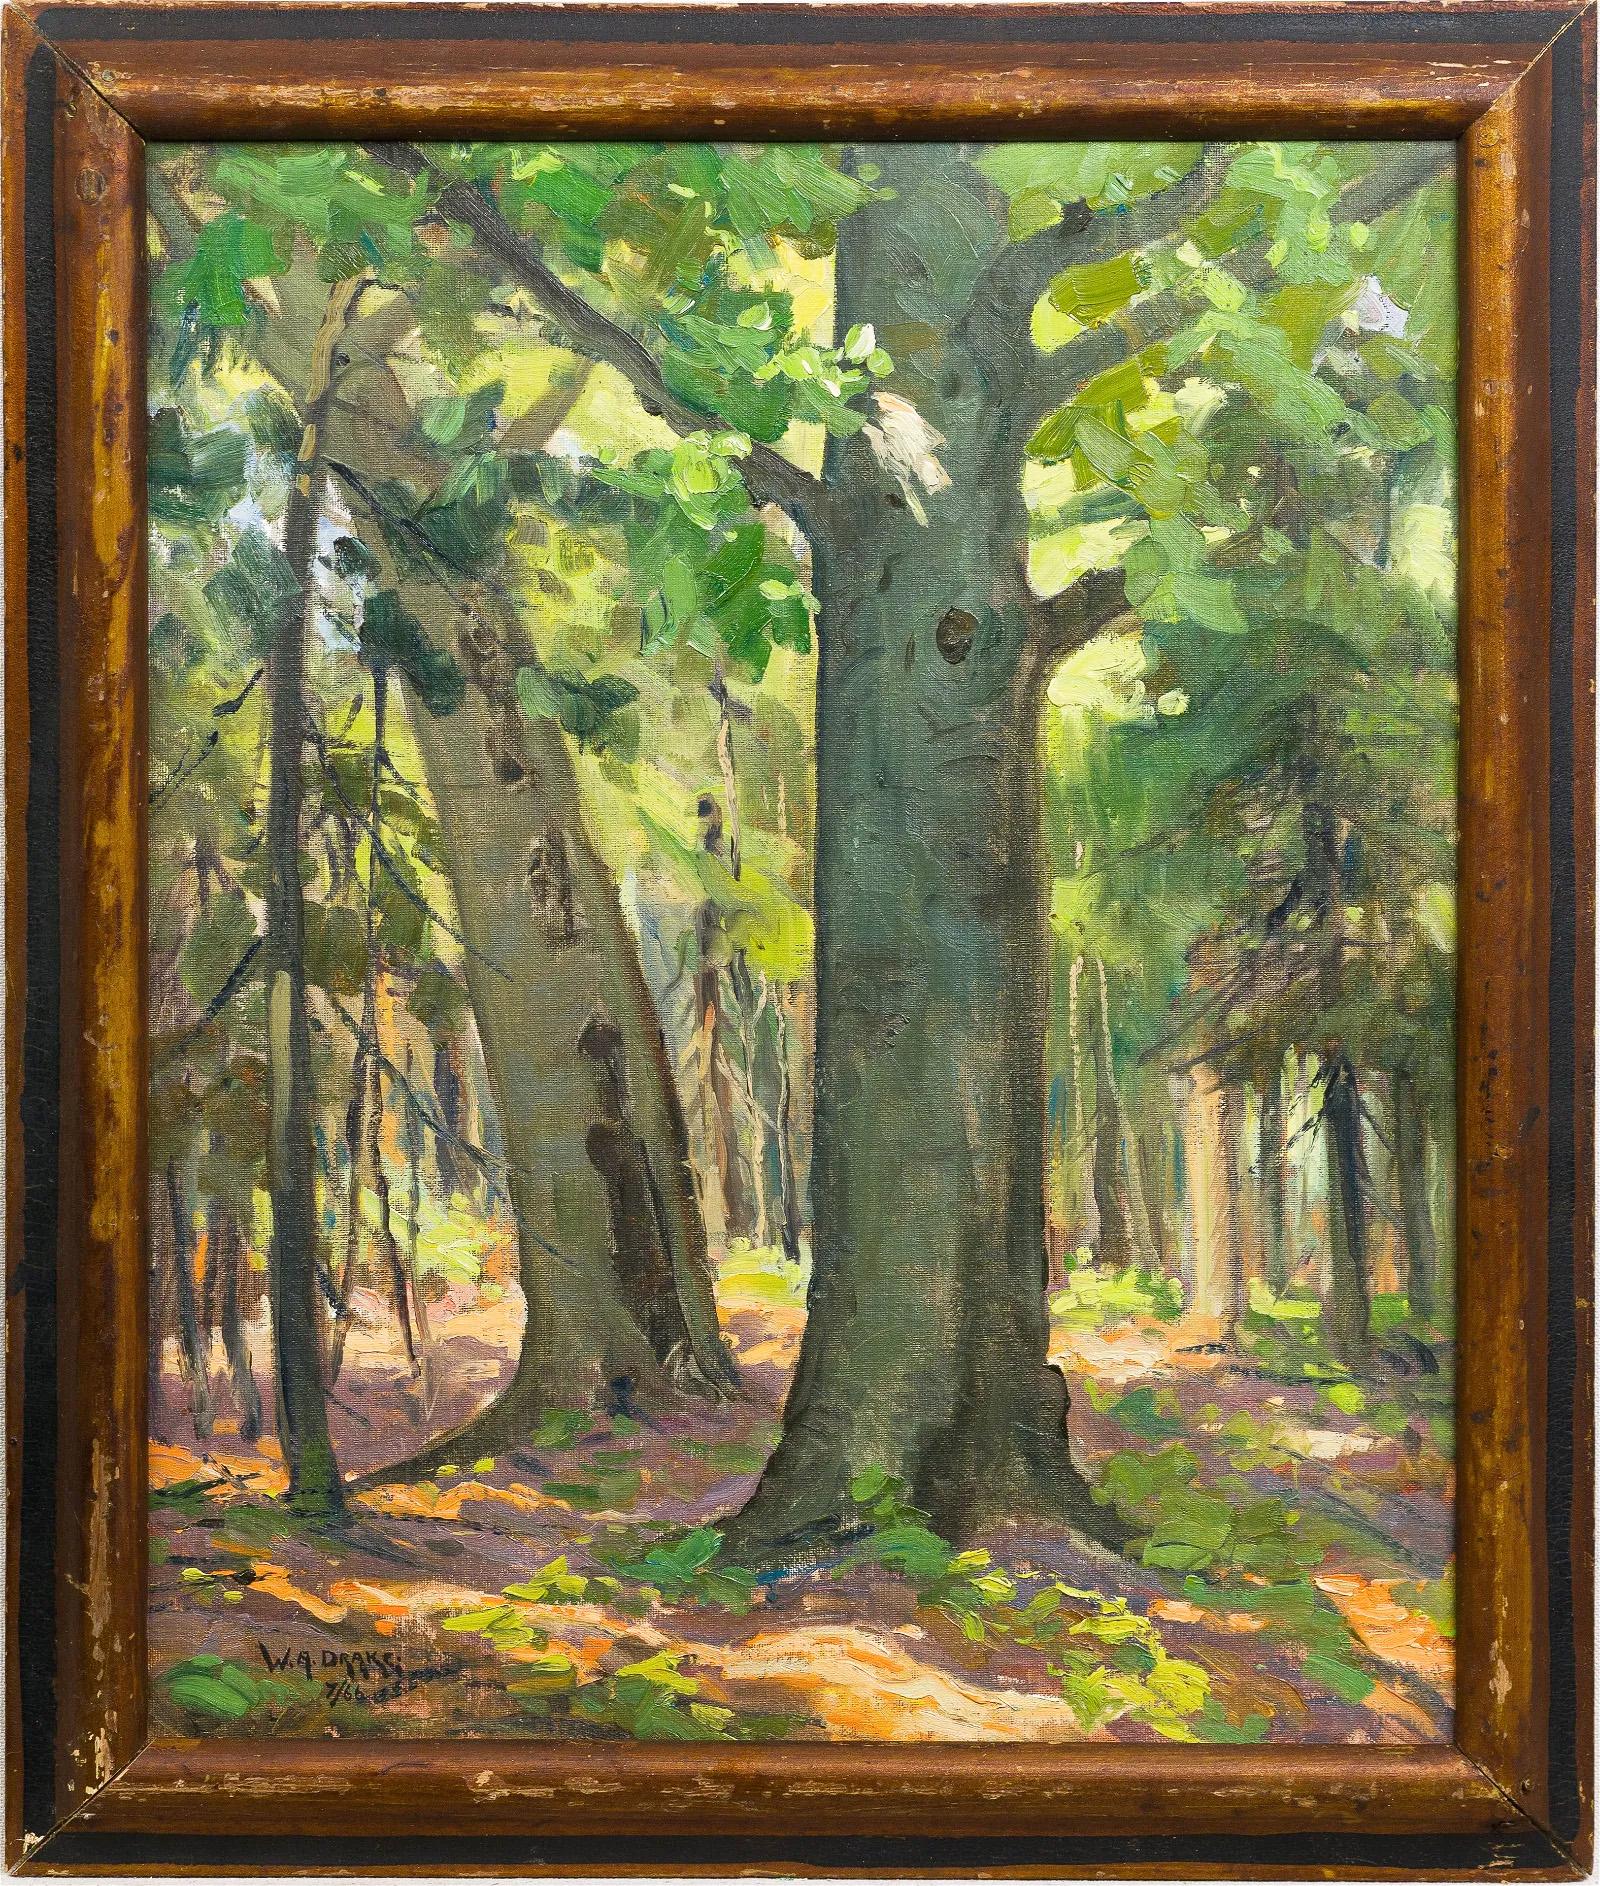 Ancienne peinture à l'huile impressionniste canadienne signée Impressionniste Forest Interior Framed - Painting de Unknown